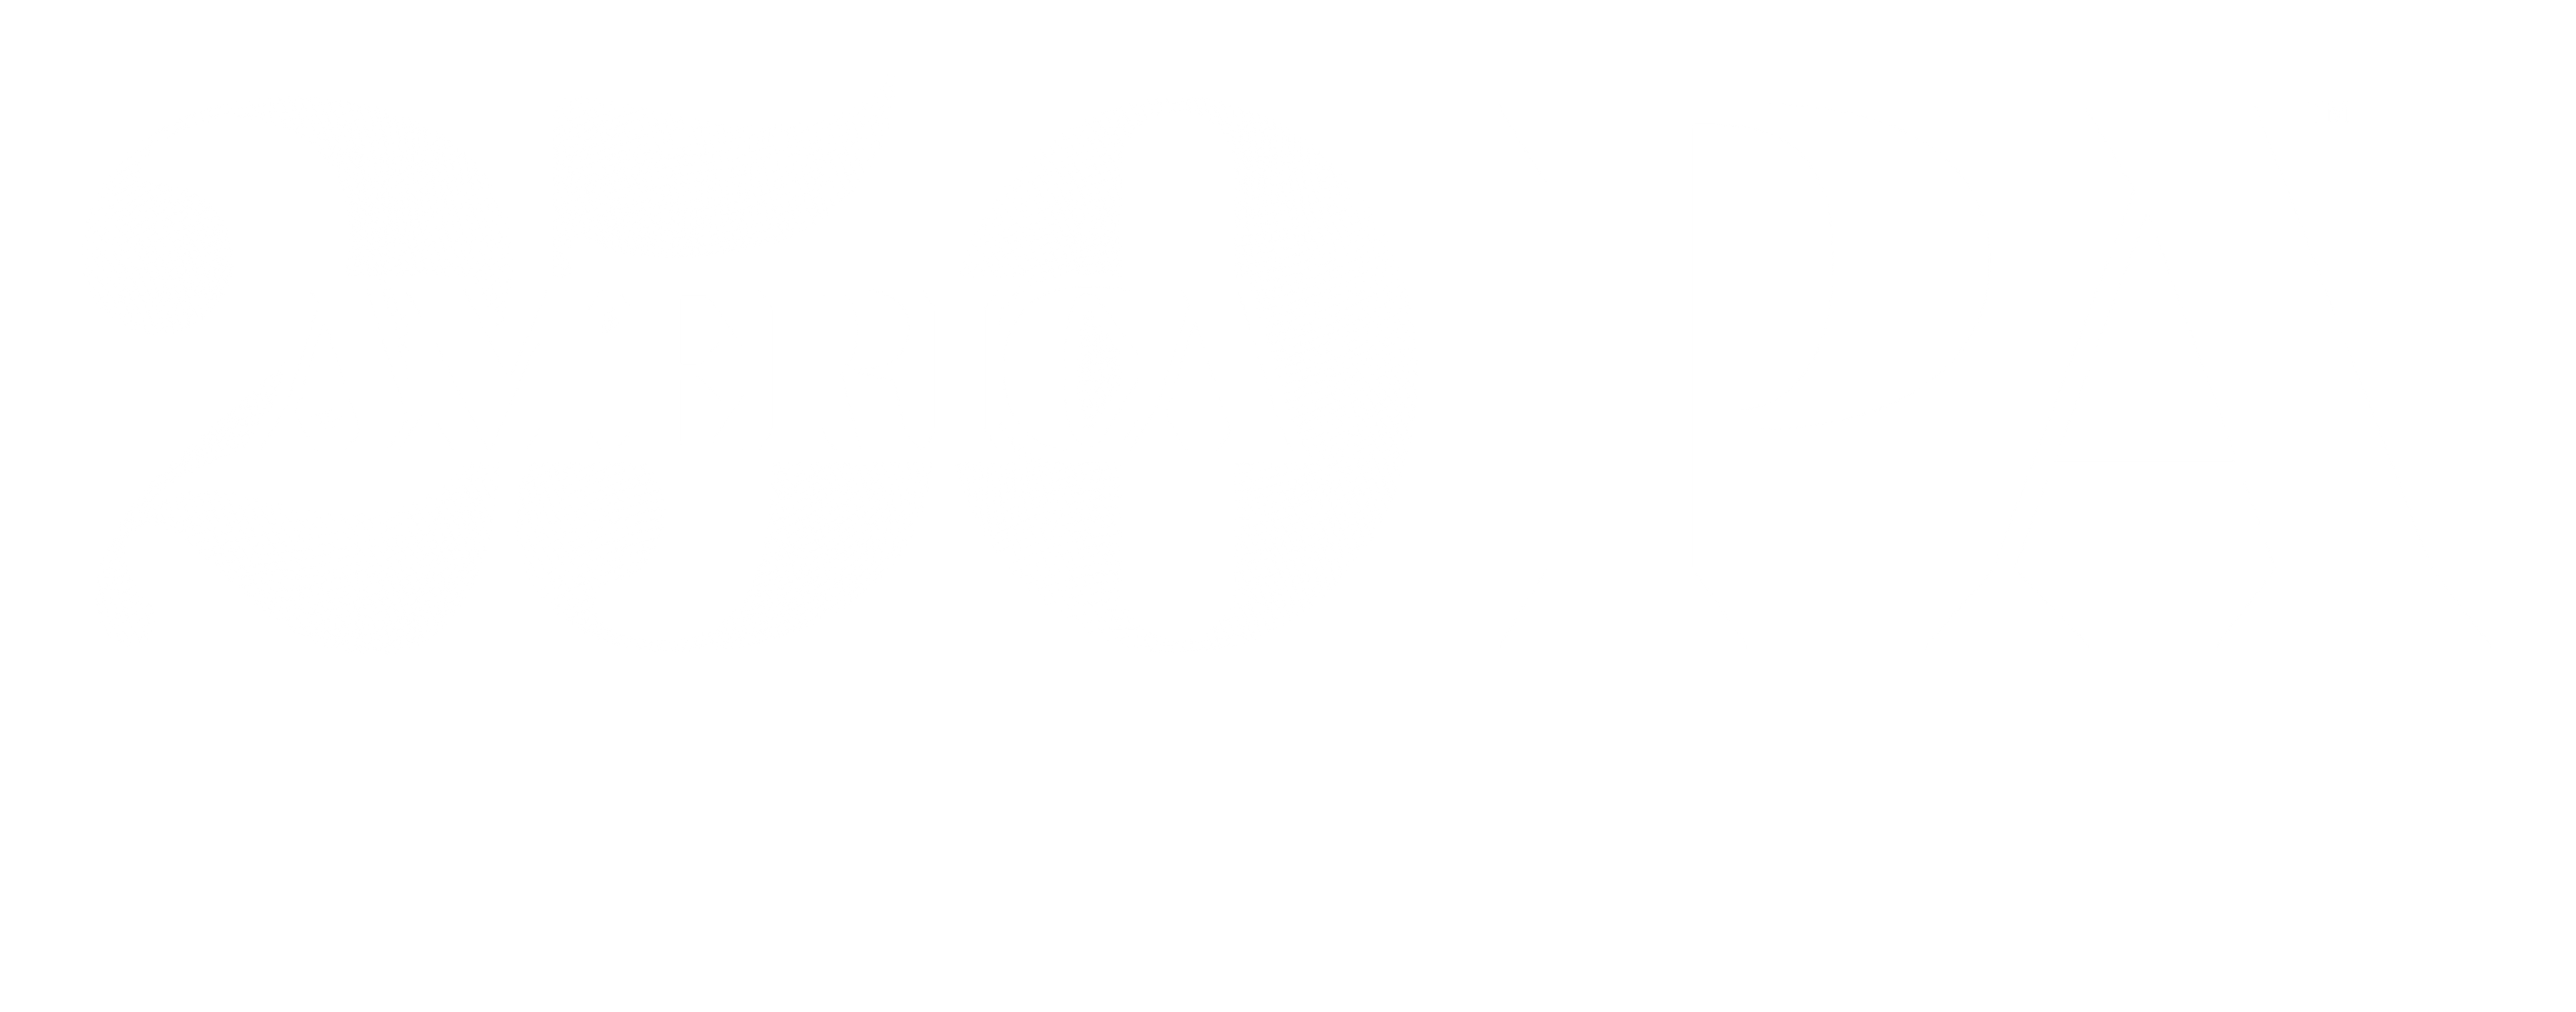 America 250 PA Mercer County Logo